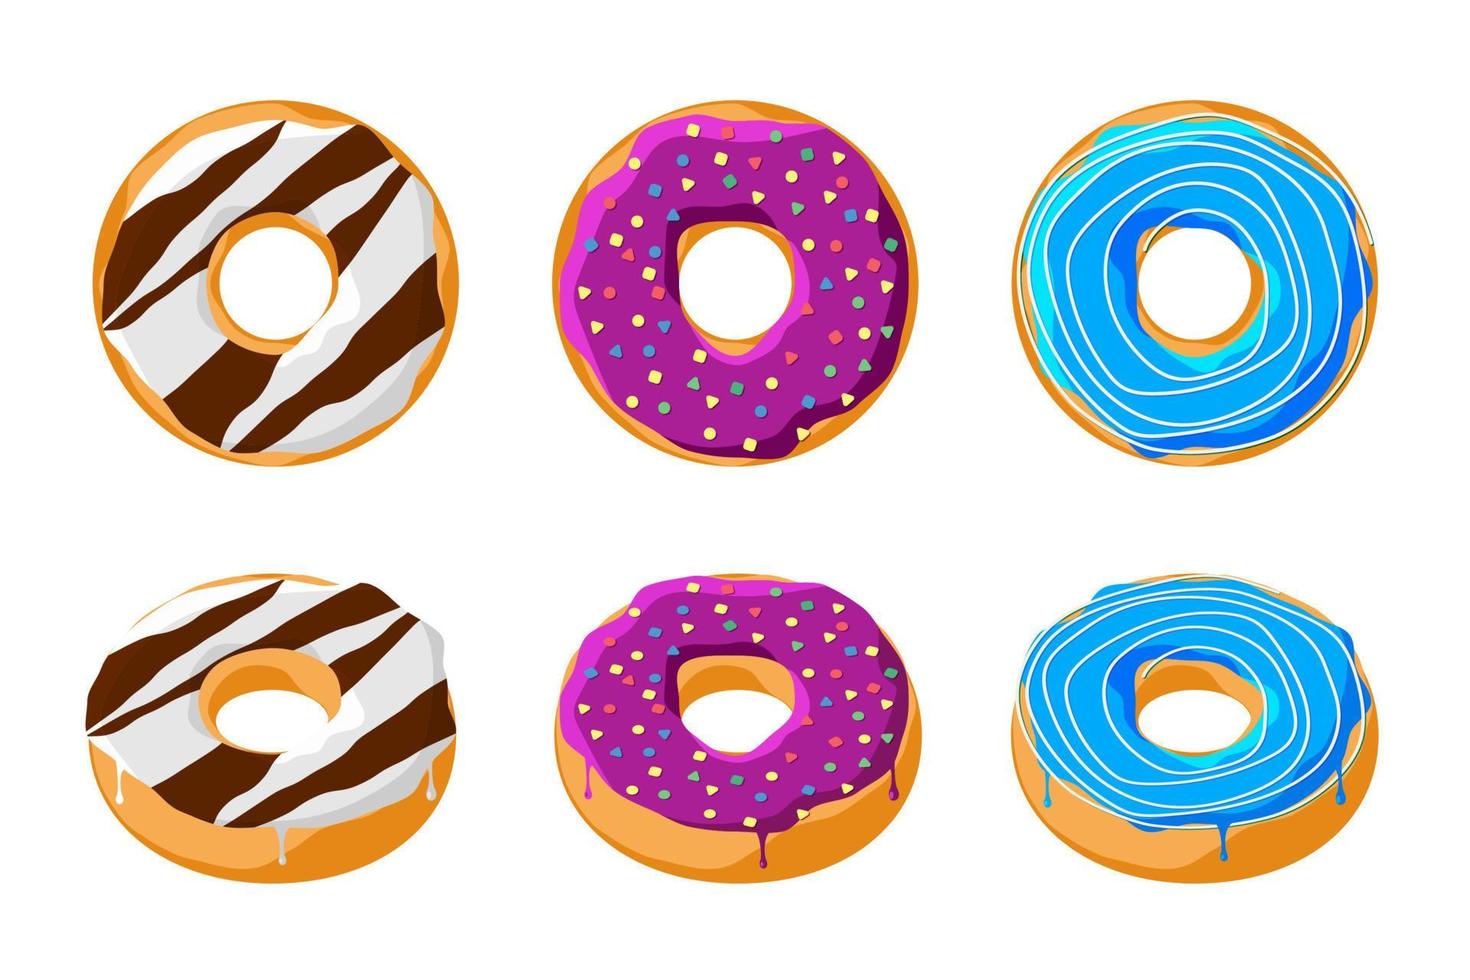 zoete kleurrijke smakelijke donut set geïsoleerd op een witte achtergrond. geglazuurde donut bovenaanzicht en 3D-collectie voor cafédecoratie of menuontwerp. chocolade paarse en blauwe banketbakkerij. vector illustratie